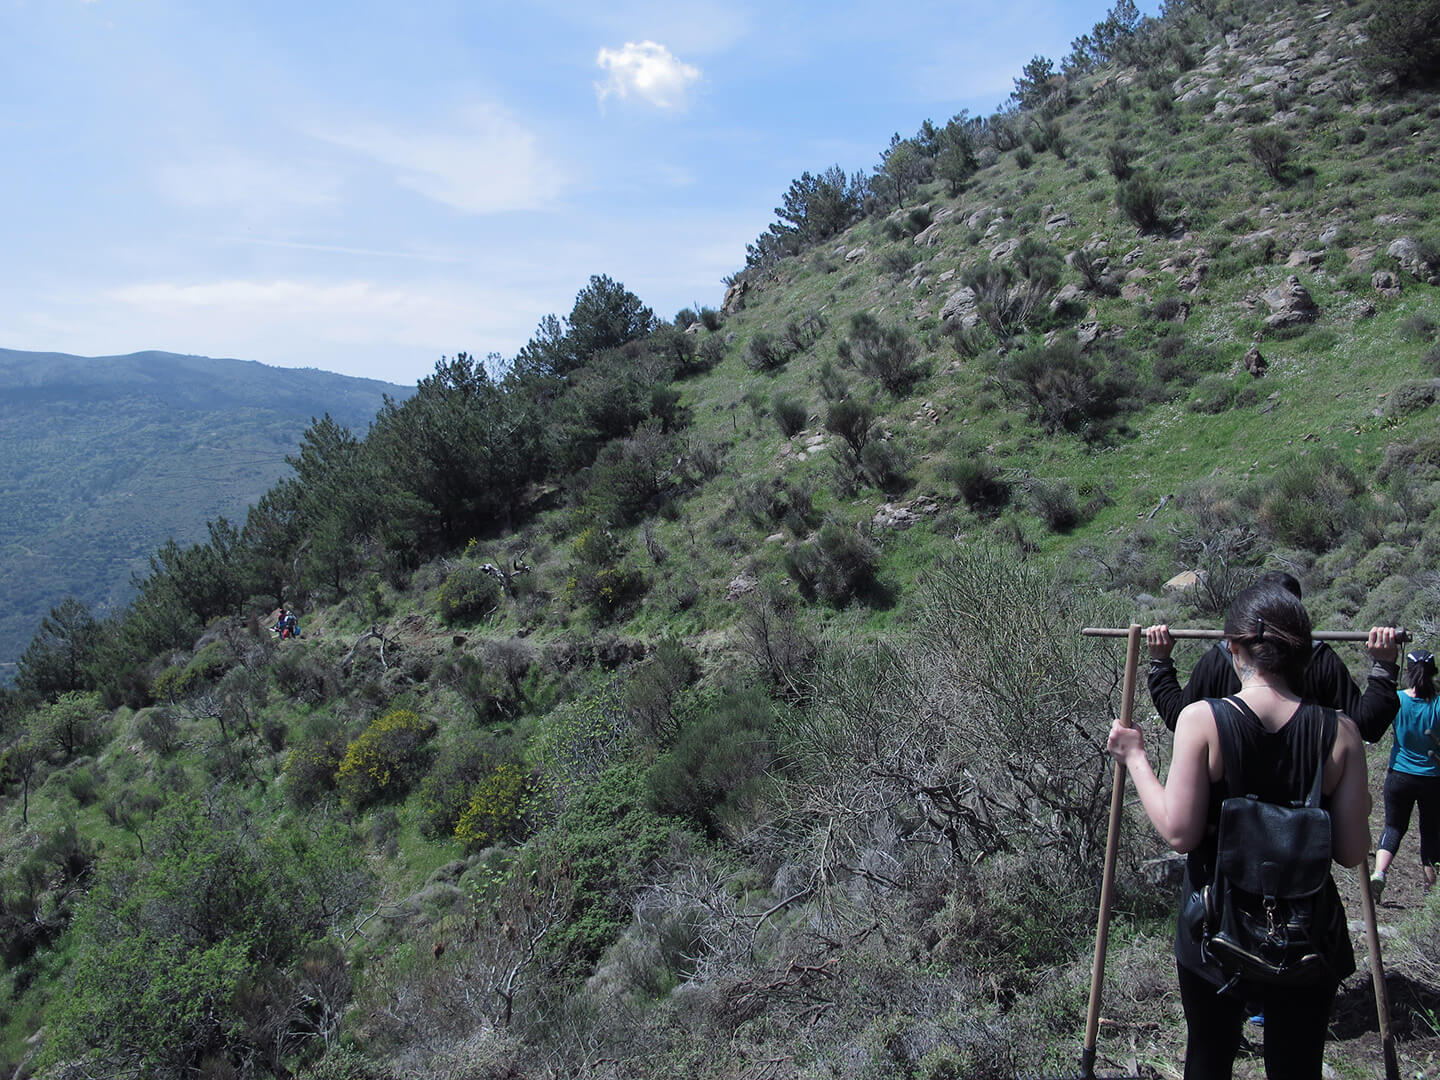 Hiking in Lardatos, in Chios